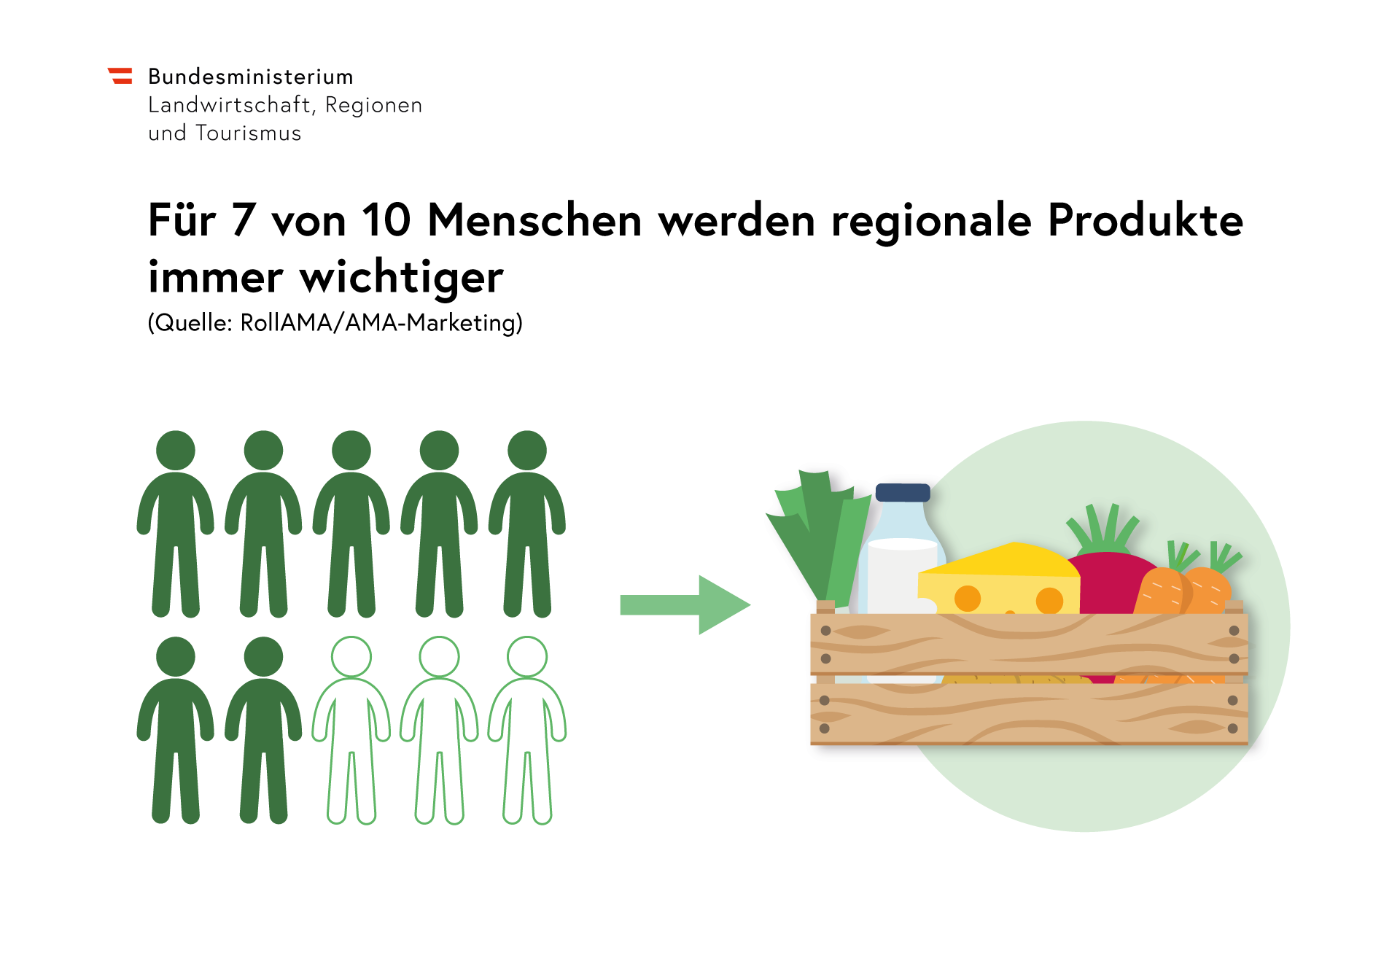 Infografik: Für 7 von 10 Menschen werden regionale Produkte immer wichtiger. Mit Illustration: sieben dunkelgrüne und drei hellgrüne Figuren sowie ein großer Korb voll frischer Lebensmittel.